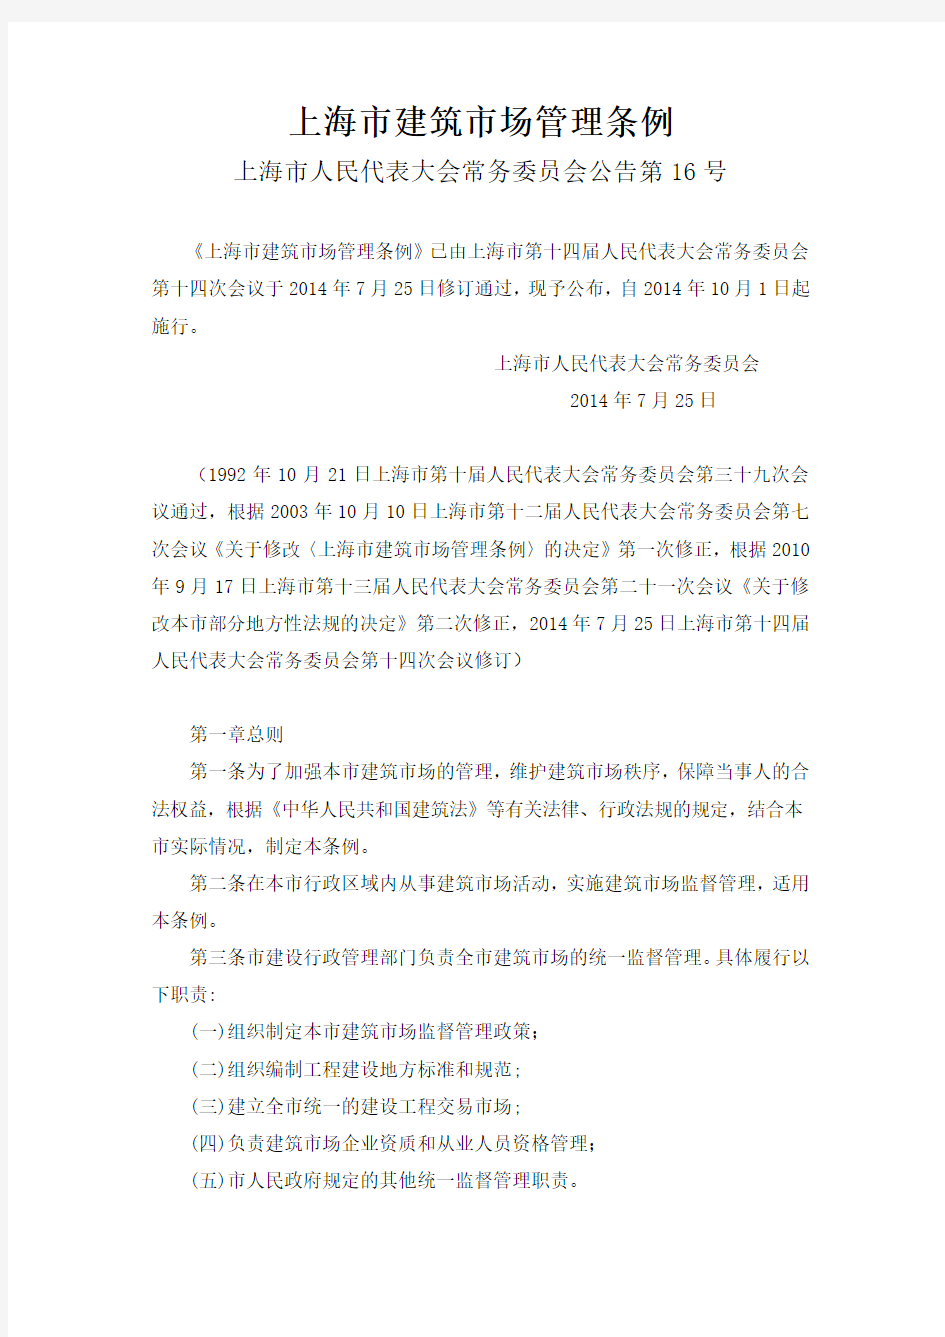 上海市建筑市场管理条例(上海市人民代表大会常务委员会公告第16号)